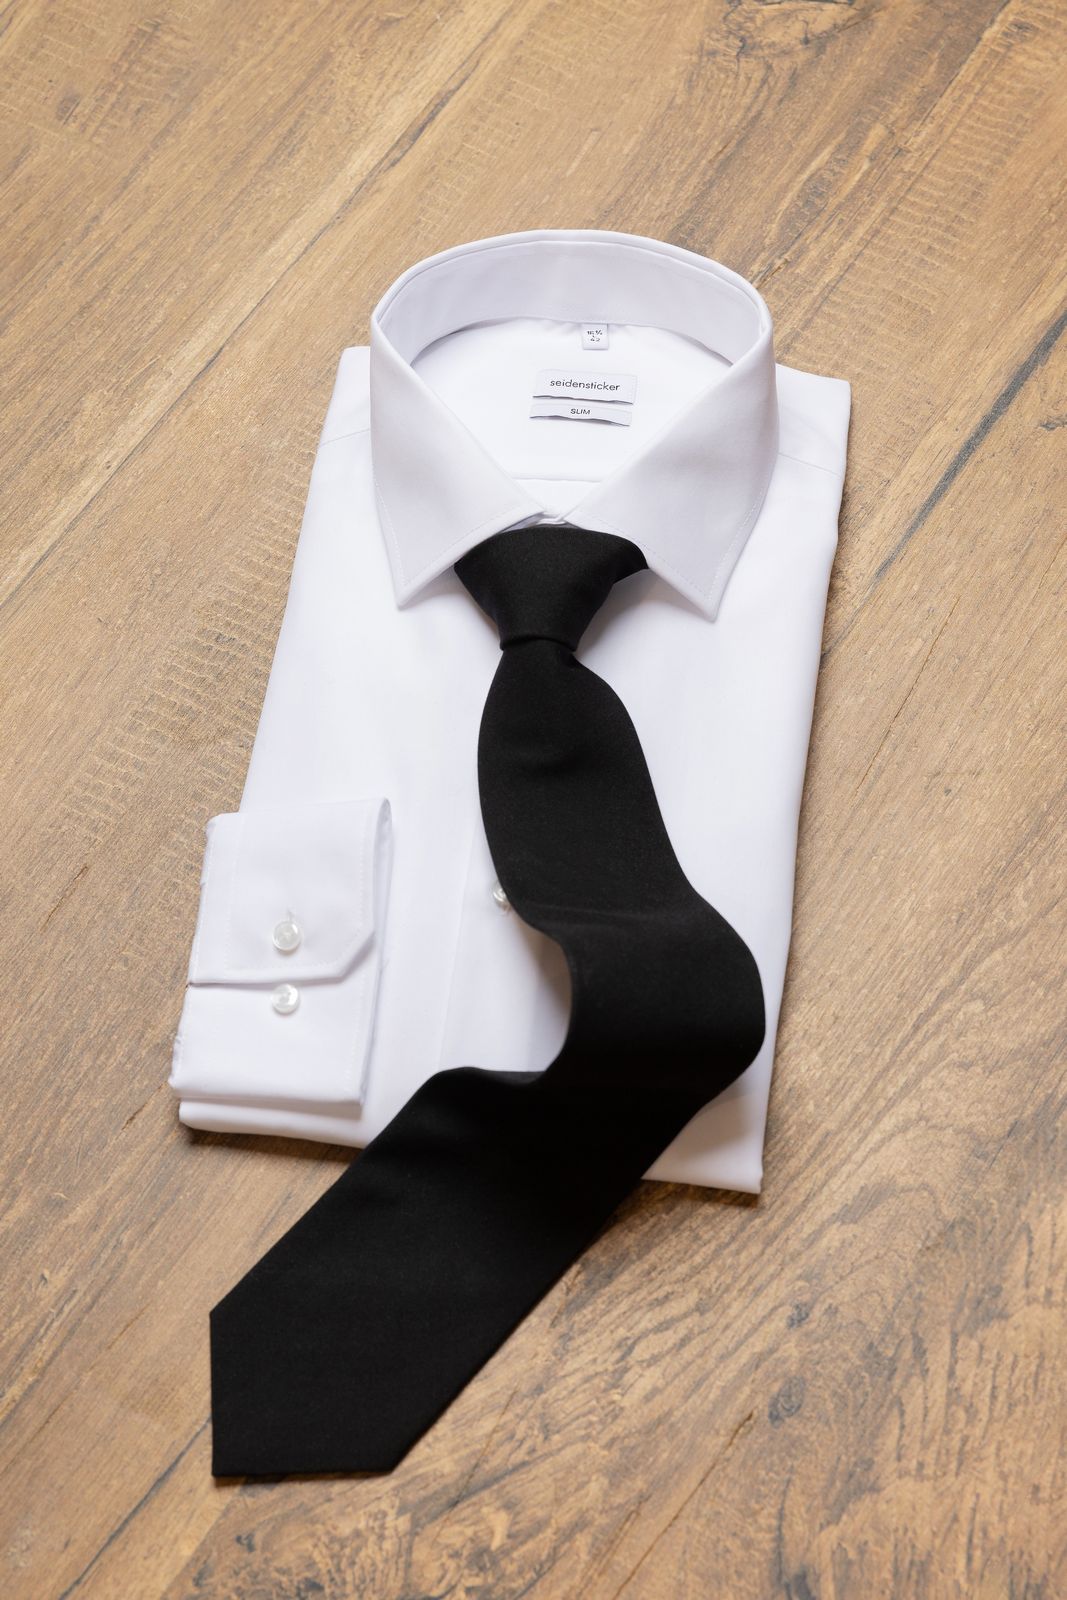 glattes weißes Hemd mit Schwarzer Krawatte